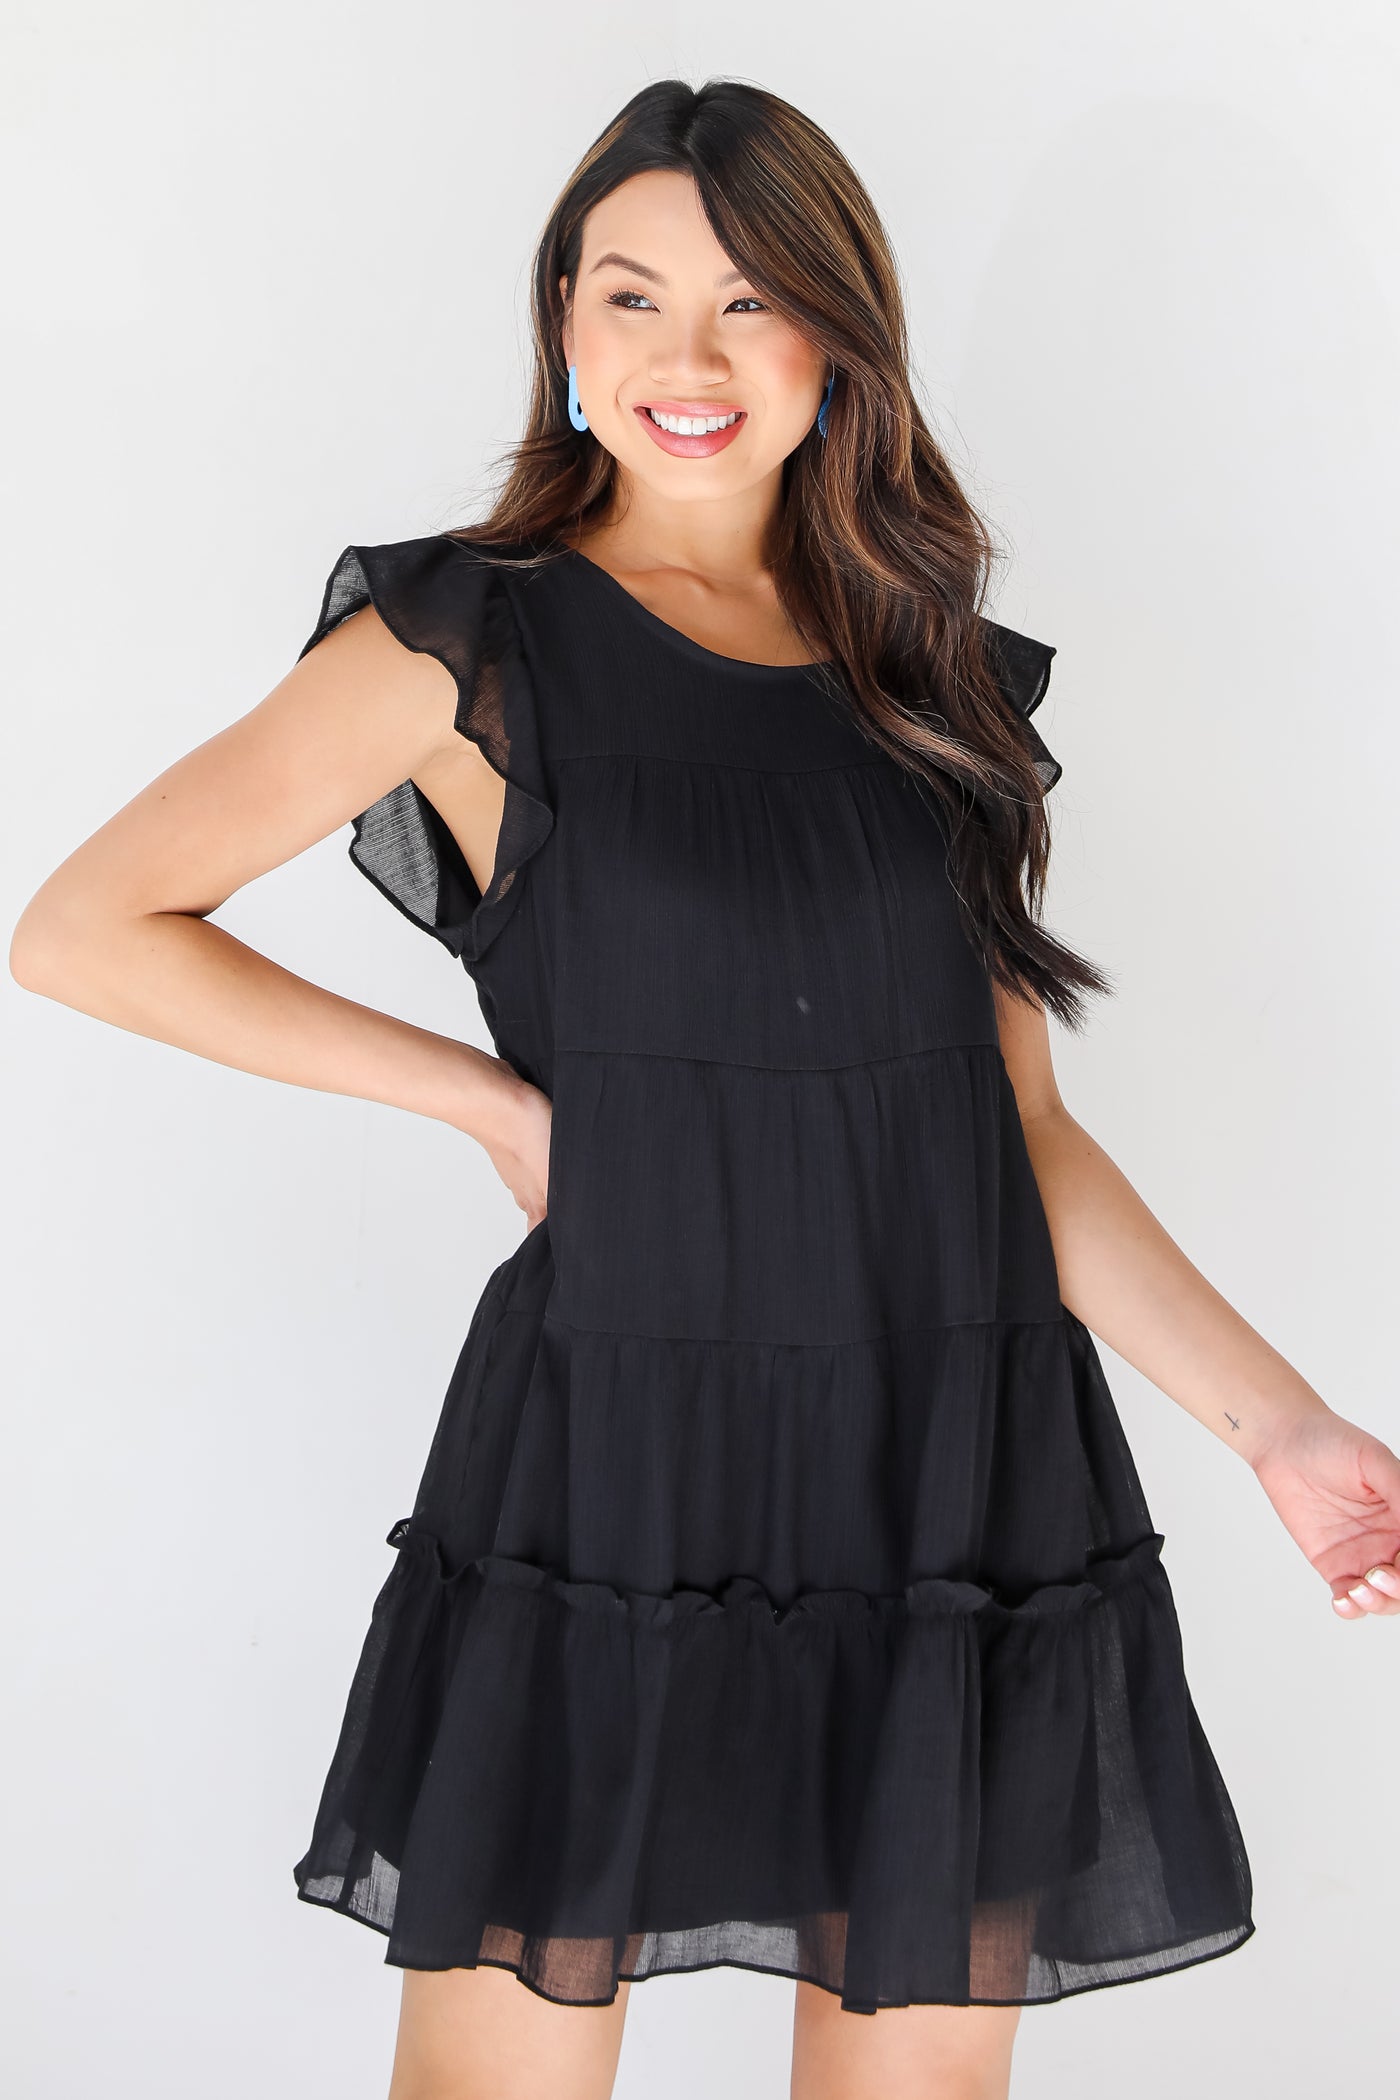 black Tiered Mini Dress on dress up model